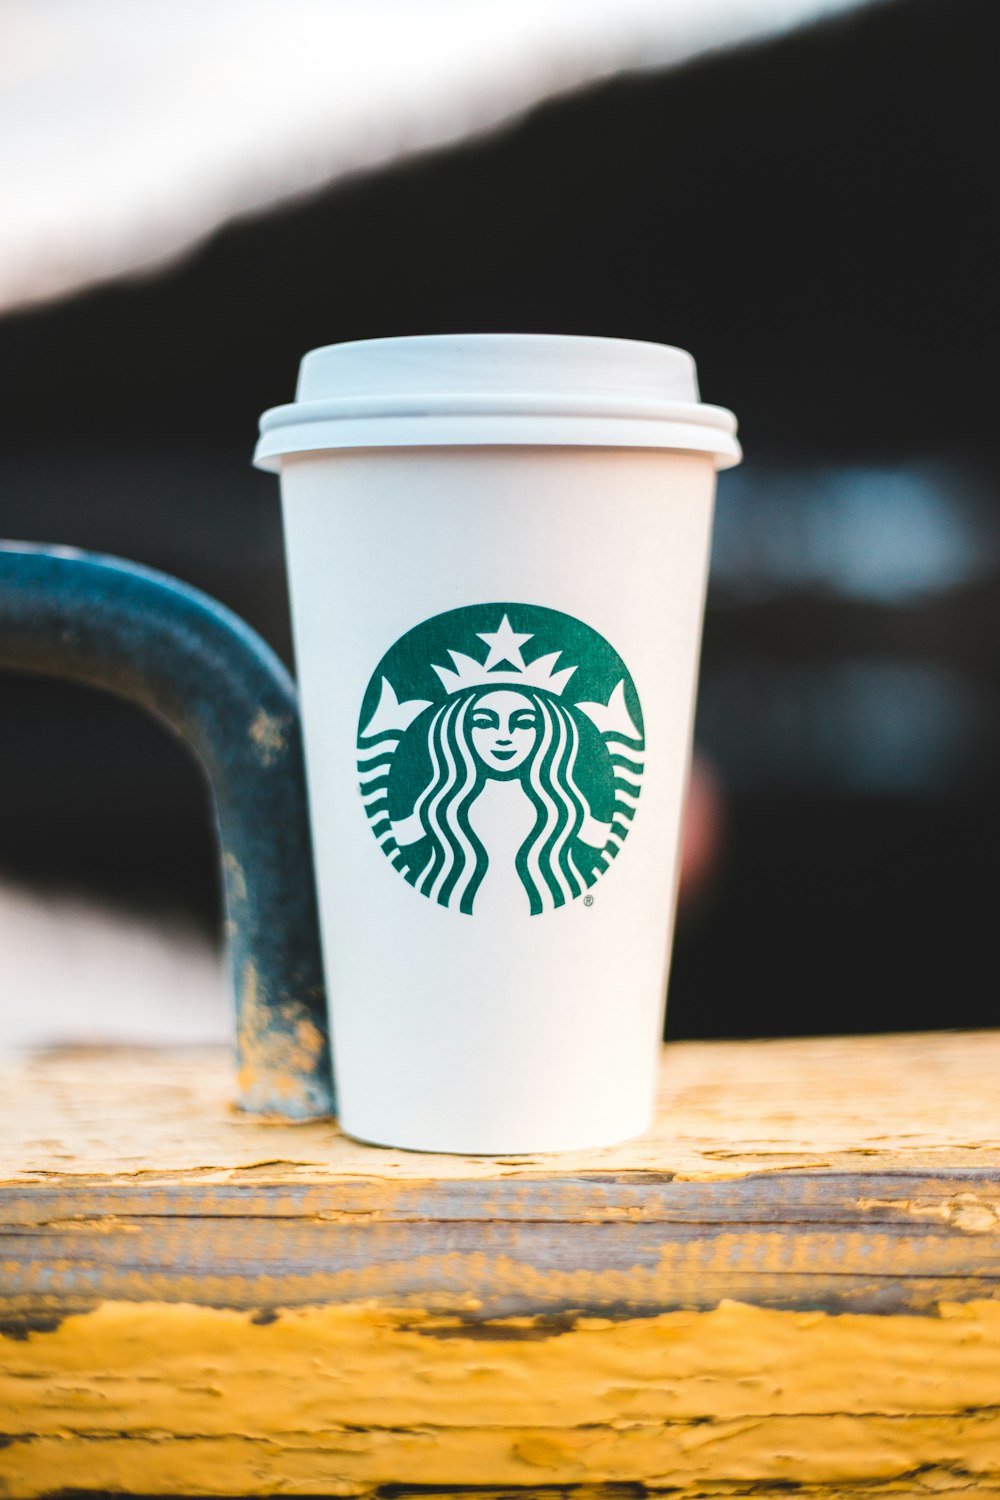 Café Starbucks Photos | Télécharger des images gratuites sur Unsplash